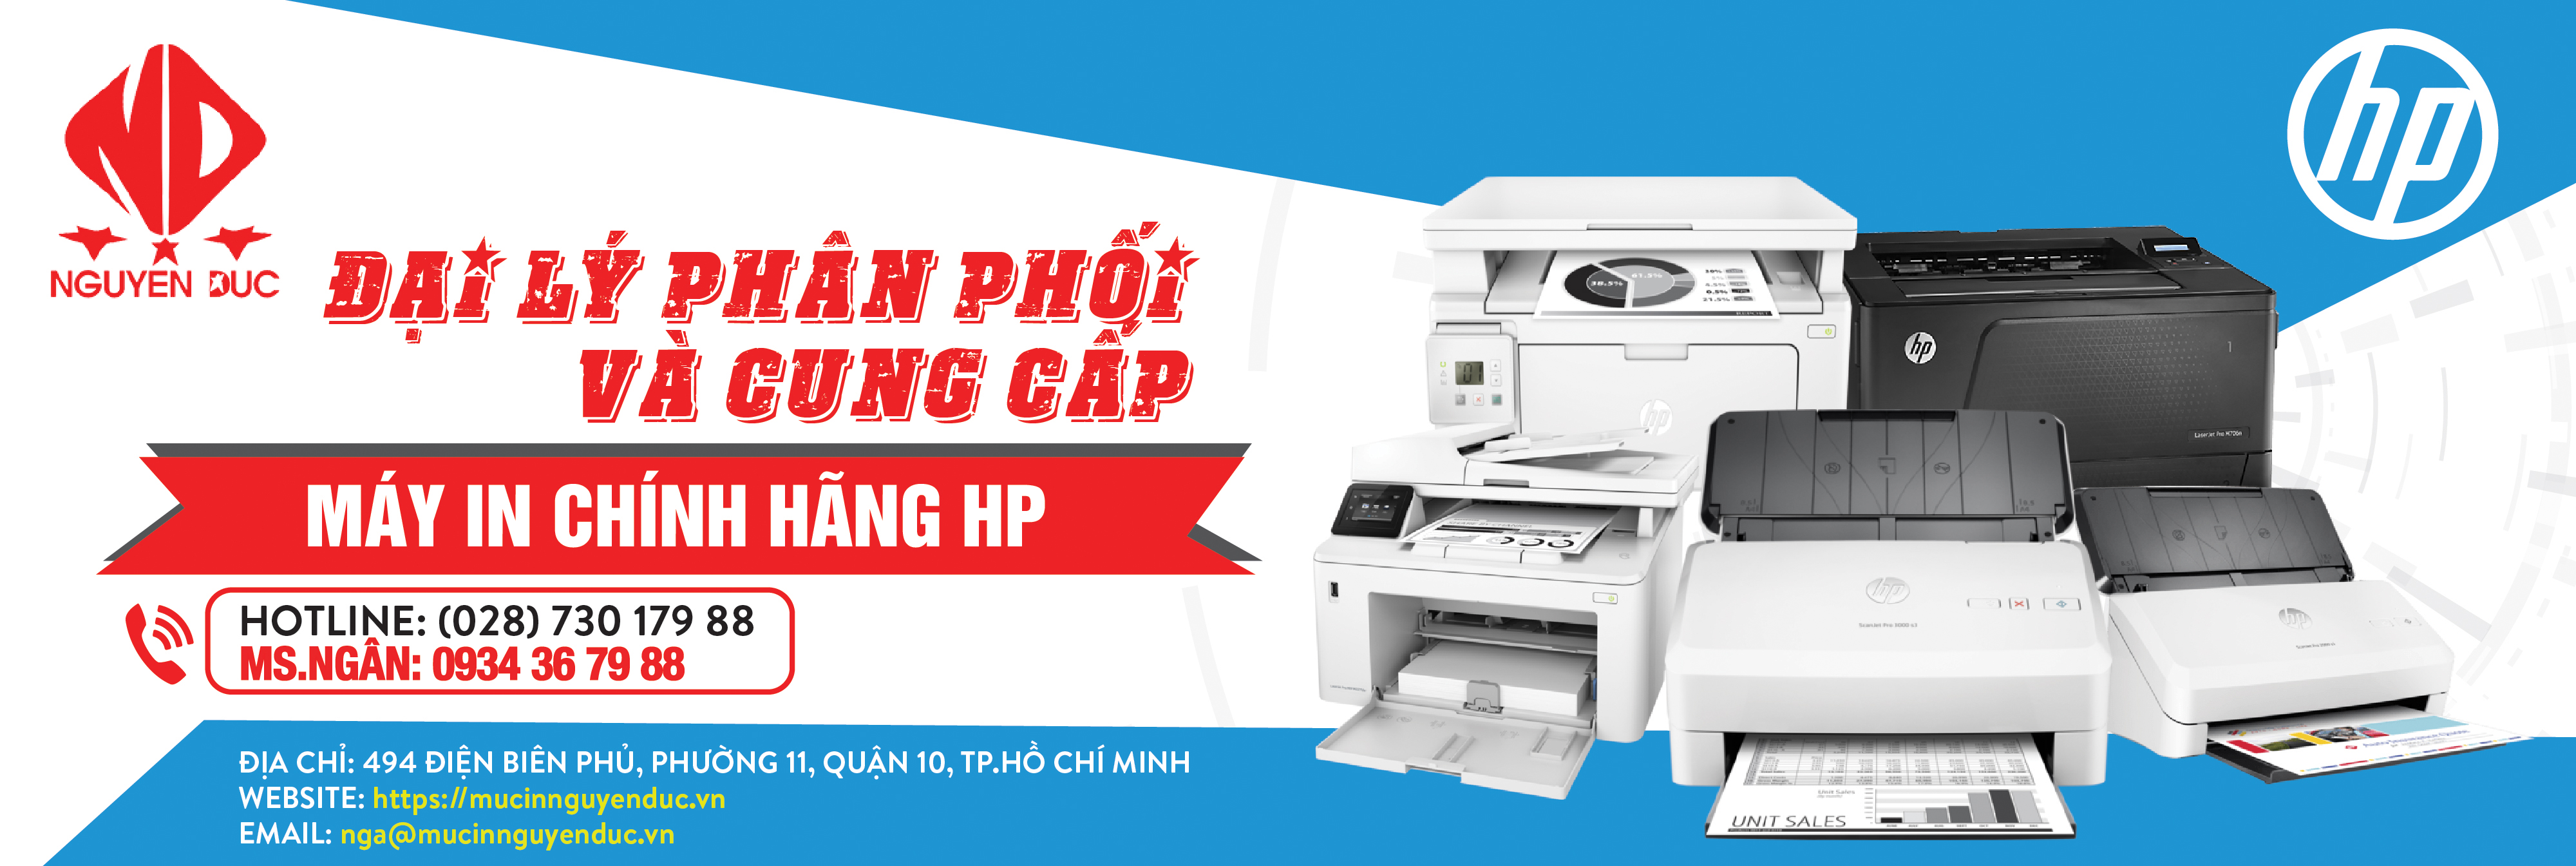 Đại lý phân phối máy quét tài liệu đảo mặt Epson WorkForce DS-570WII - chính hãng, giao hàng tại huyện Hóc Môn, thành phố Hồ Chí Minh